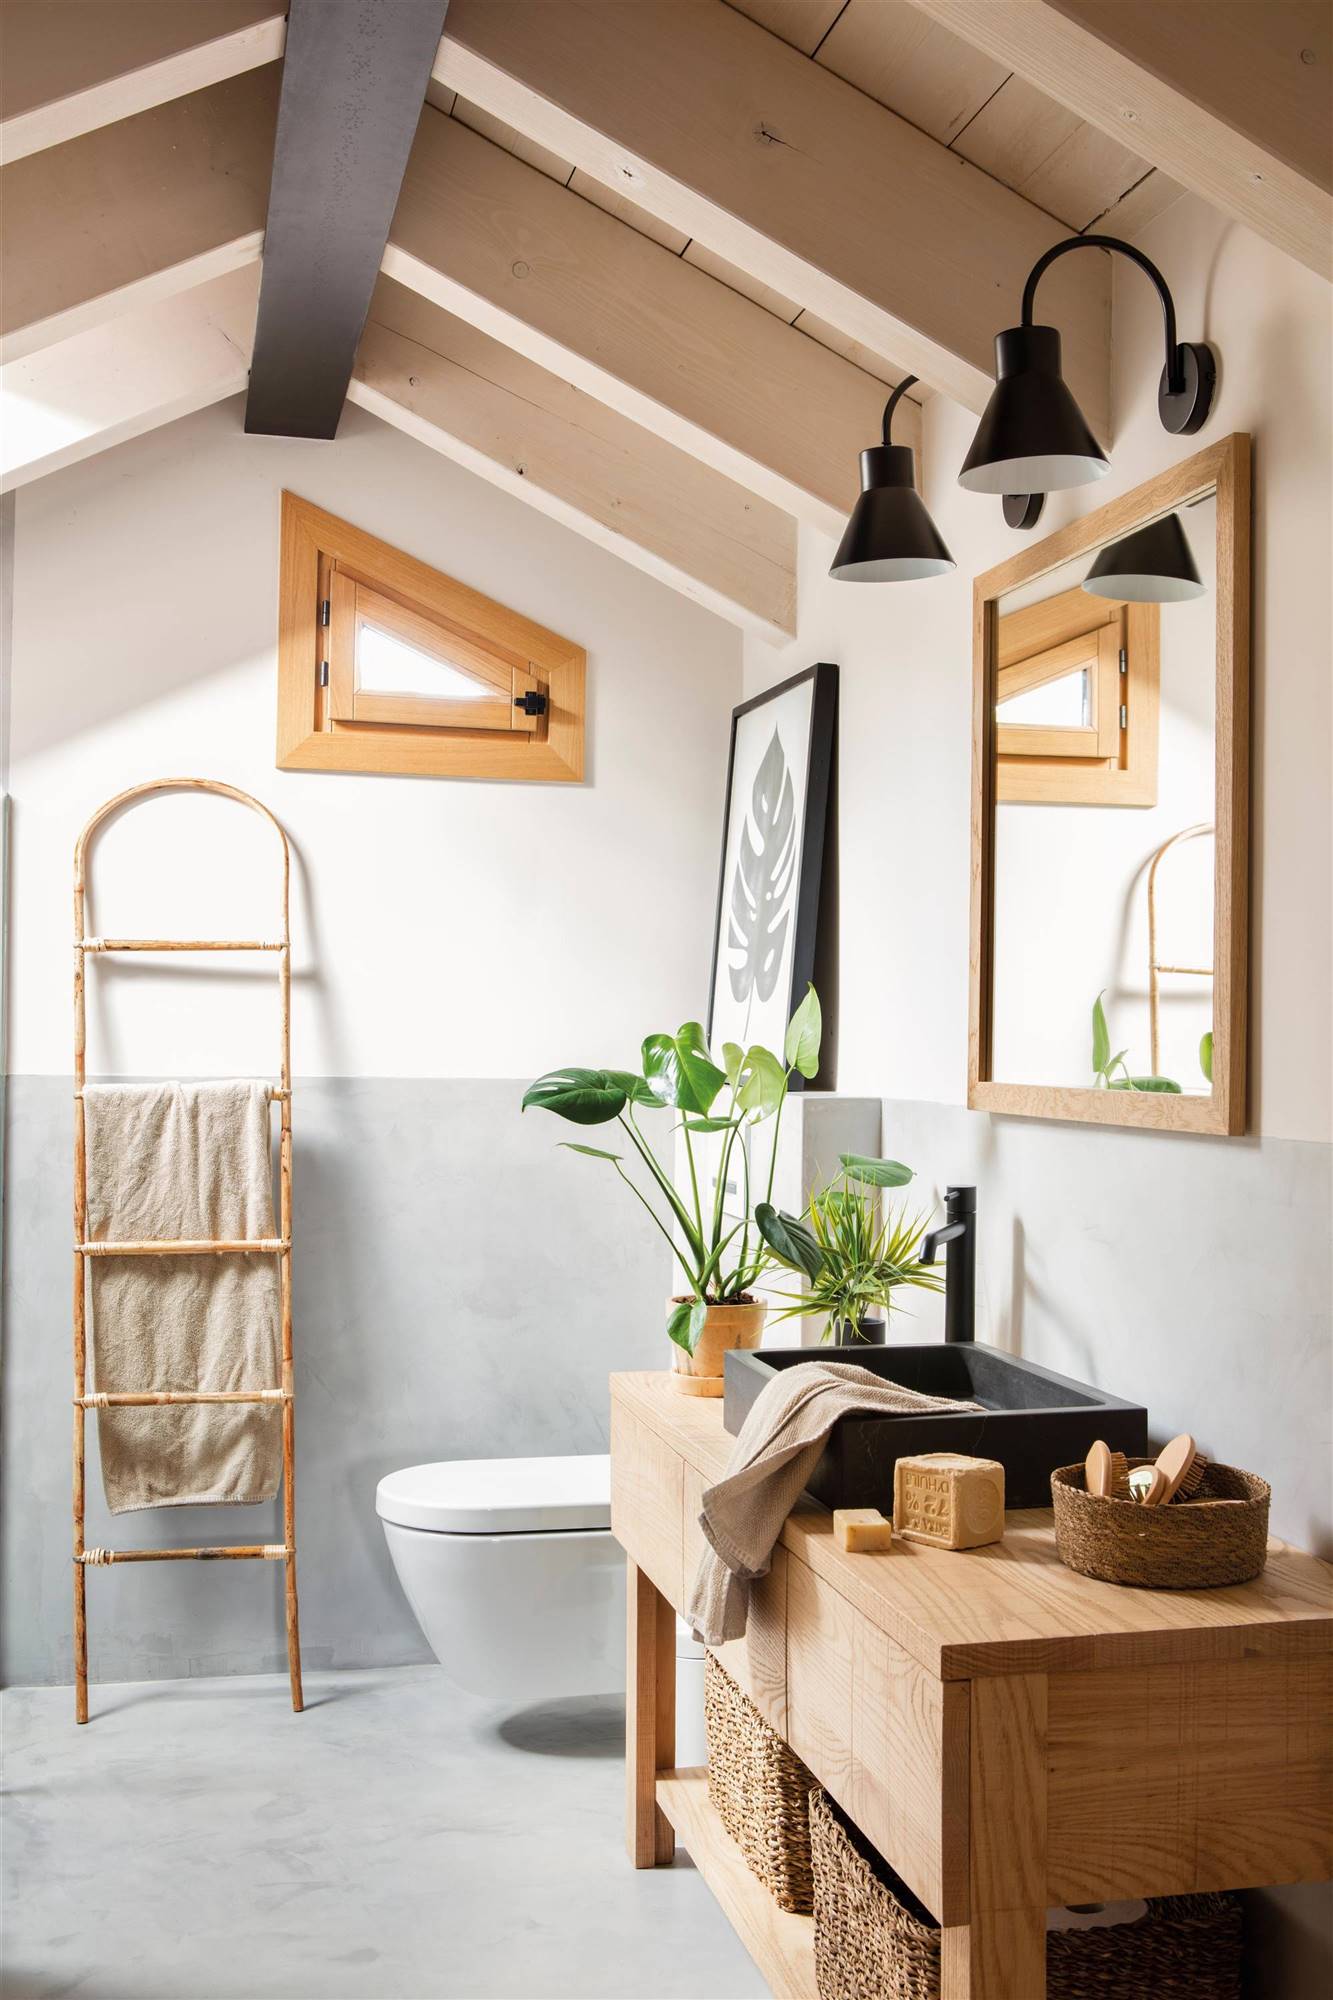 Baño rústico con paredes bicolor y muebles de madera con escalera decorativa 00526568